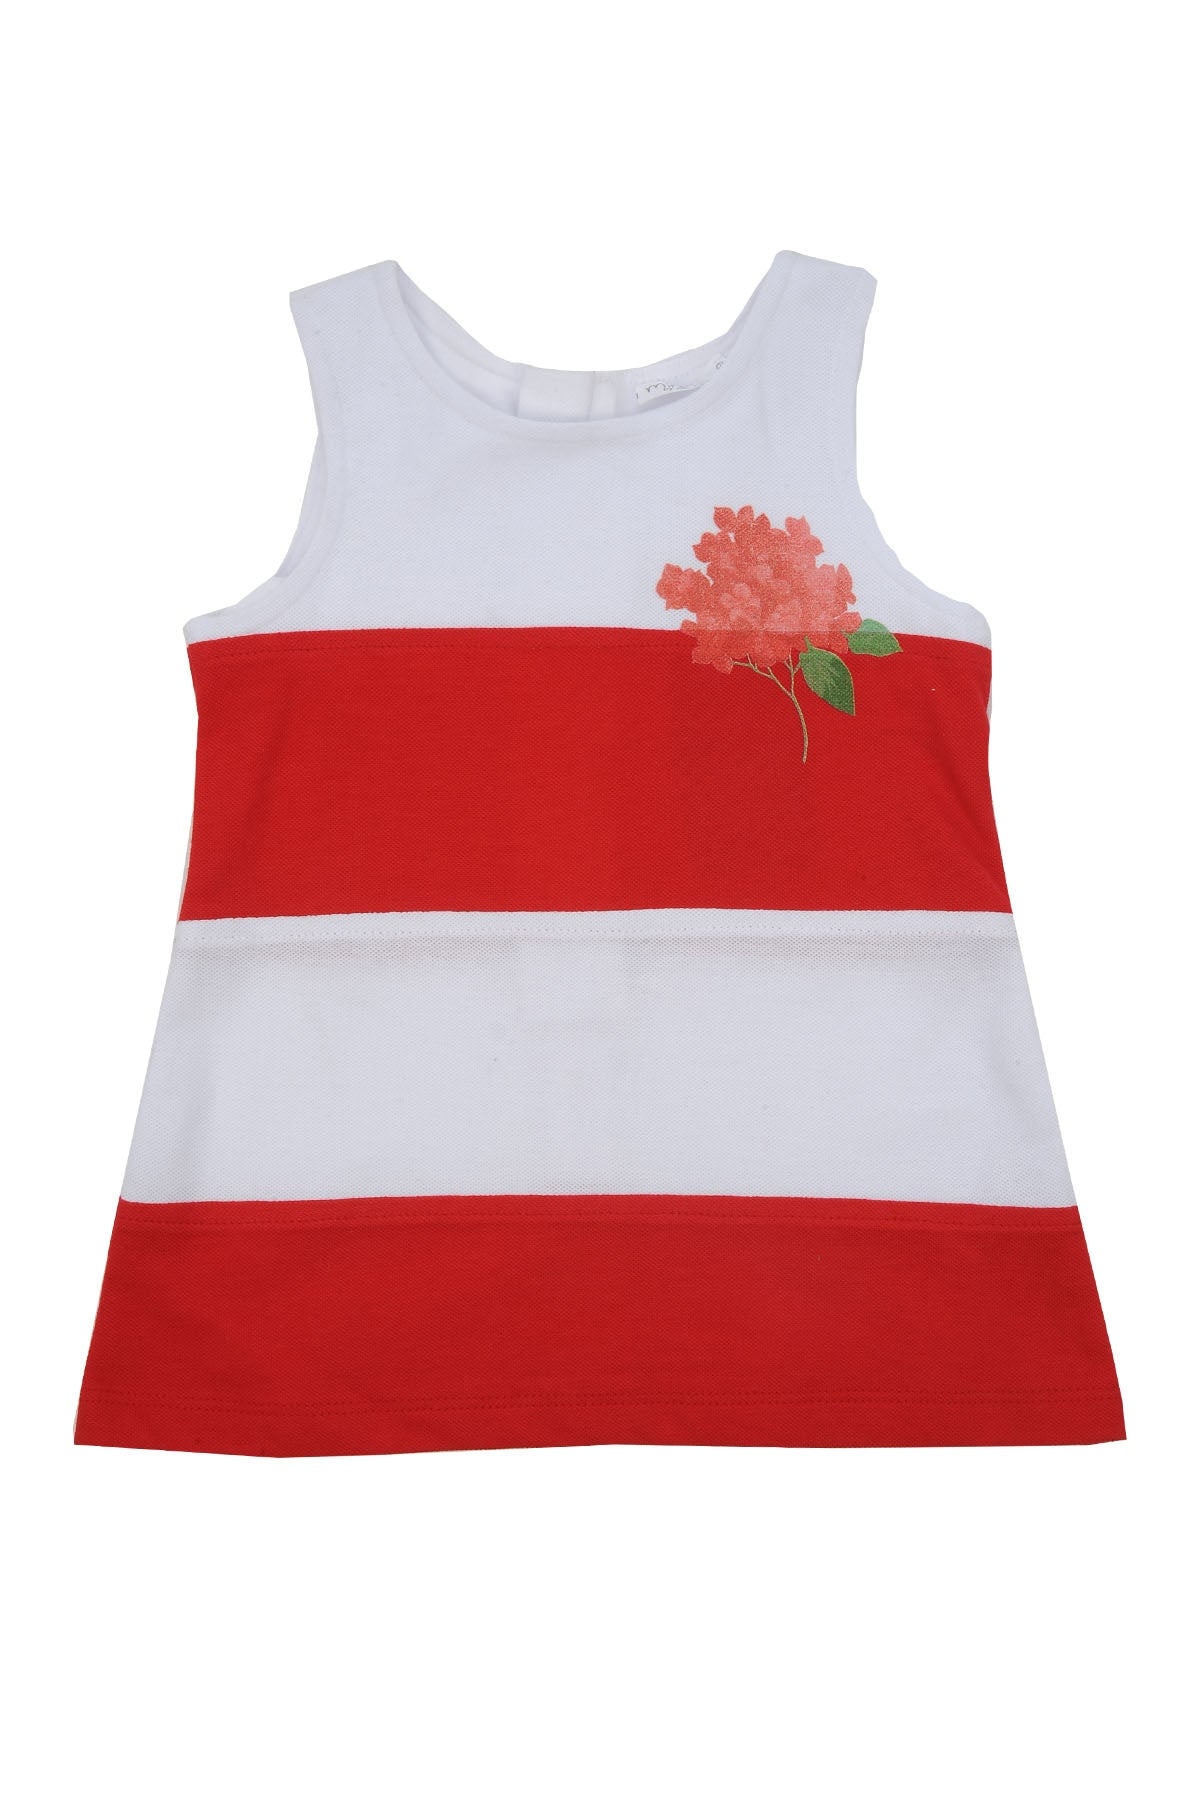 Kız Bebek Kırmızı Çizgili Kolsuz Elbise (6ay-4yaş)-0